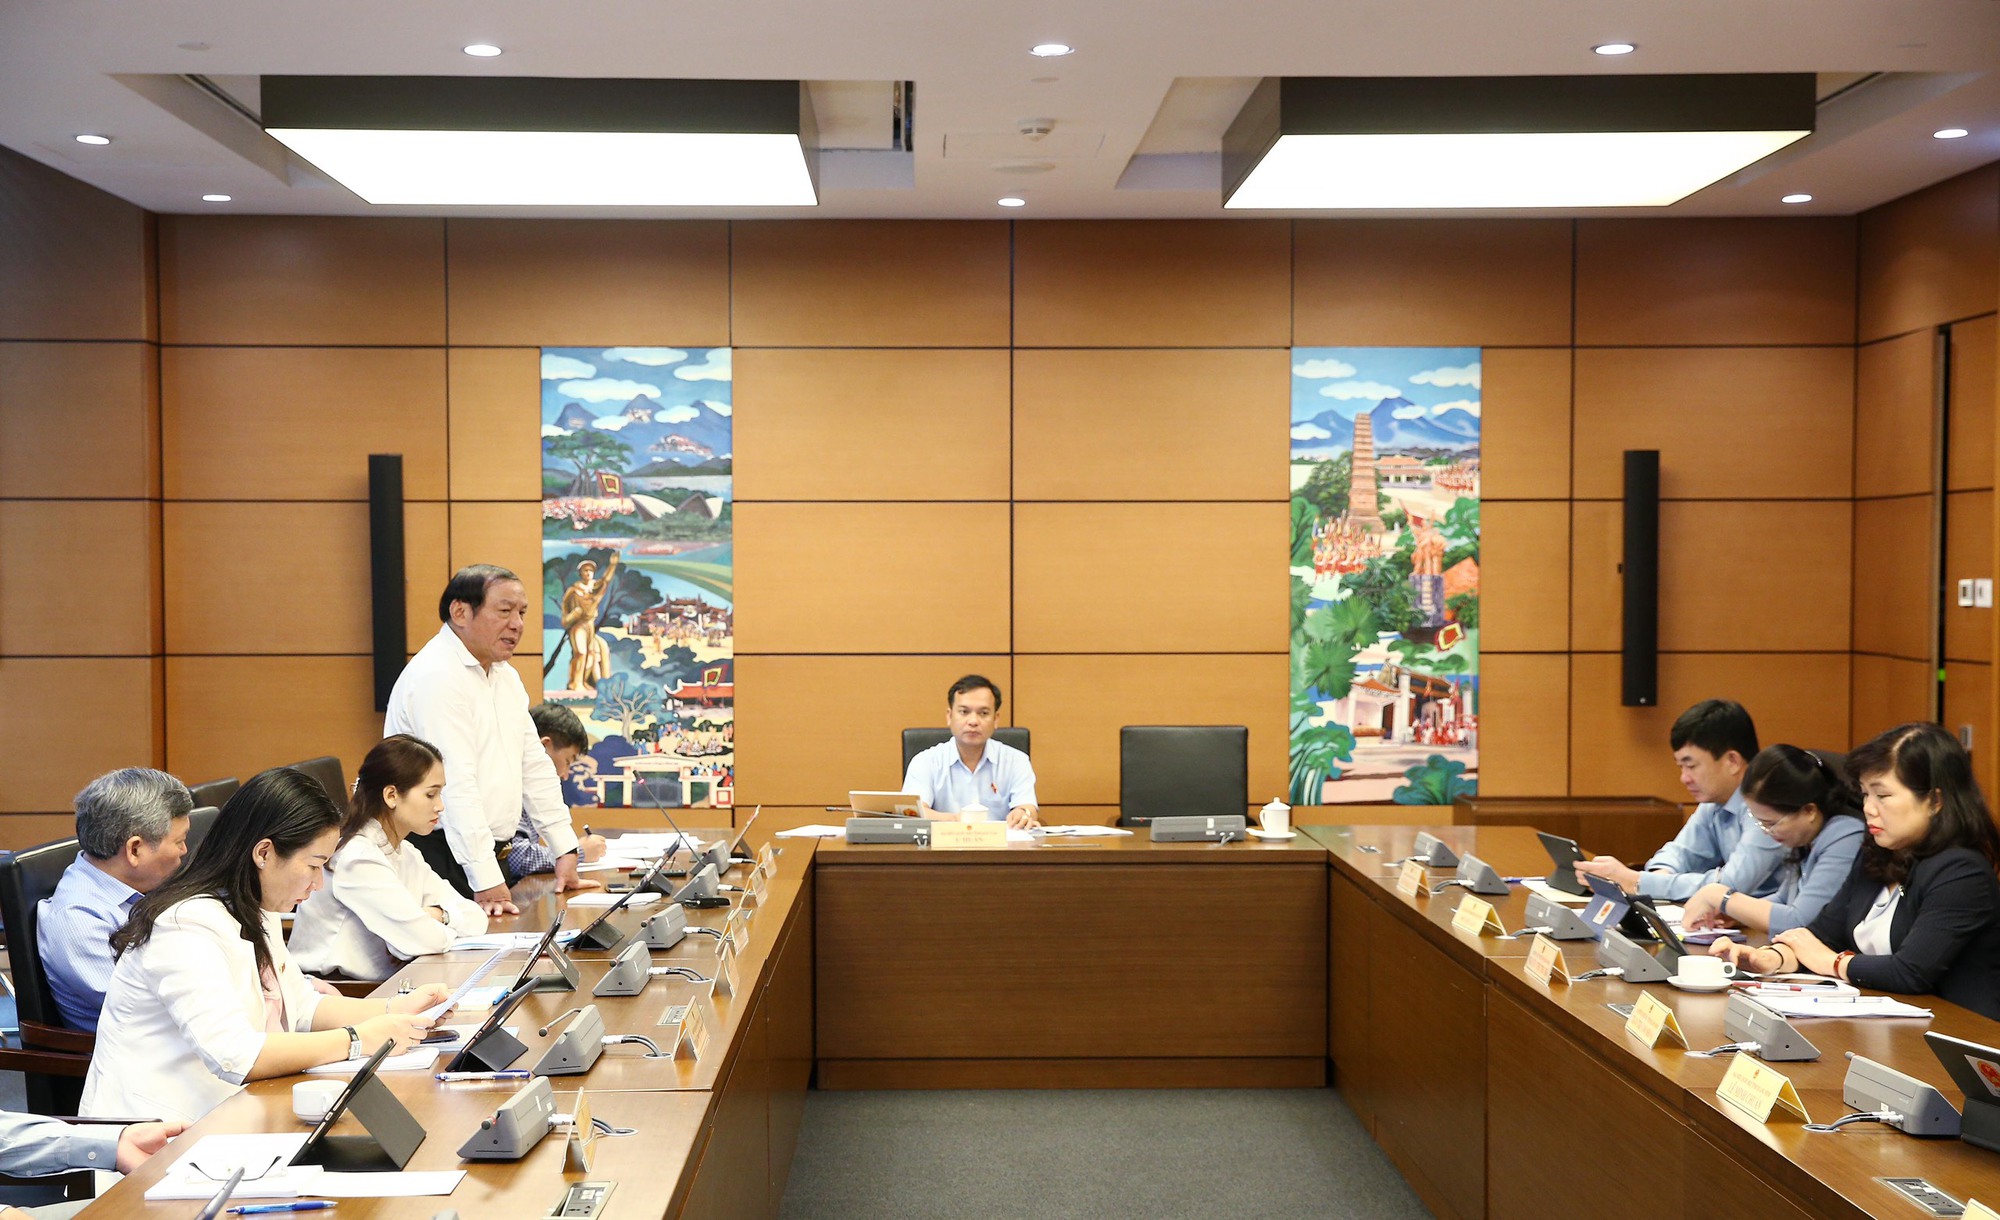 Bộ trưởng Nguyễn Văn Hùng: Quy hoạch đô thị phải phát huy được những nét văn hóa độc đáo - Ảnh 1.